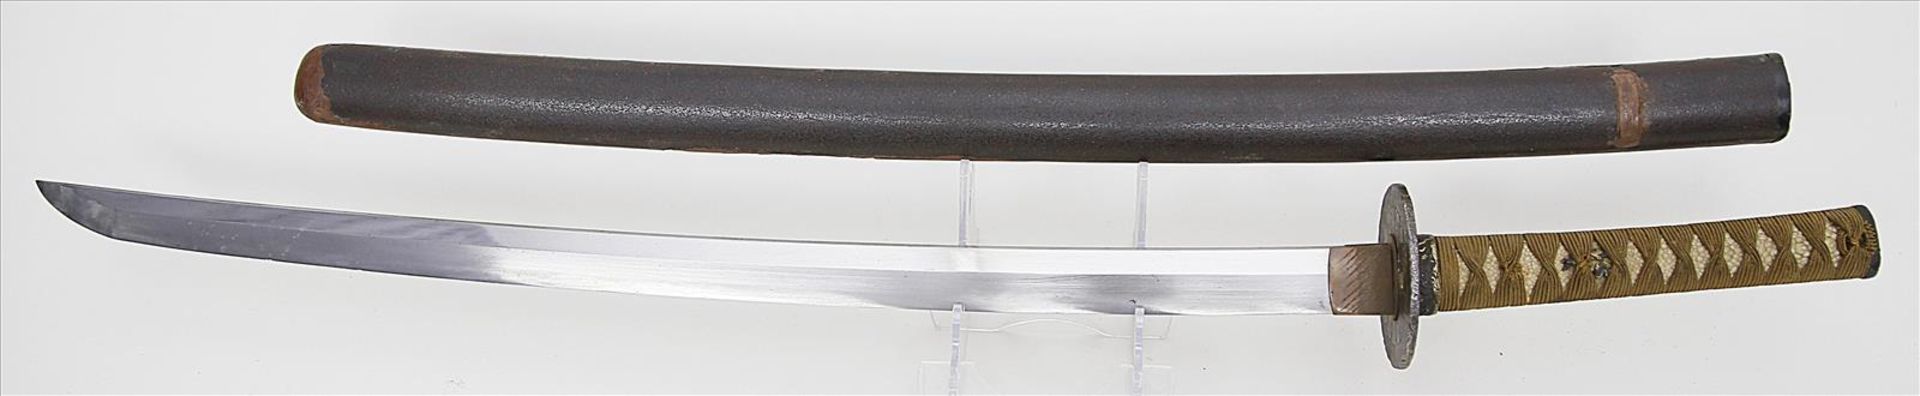 Samuraischwert - Katana.Polierte Eisenklinge. Tsuba aus Eisen mit Blütenrelief. Fuchi mit